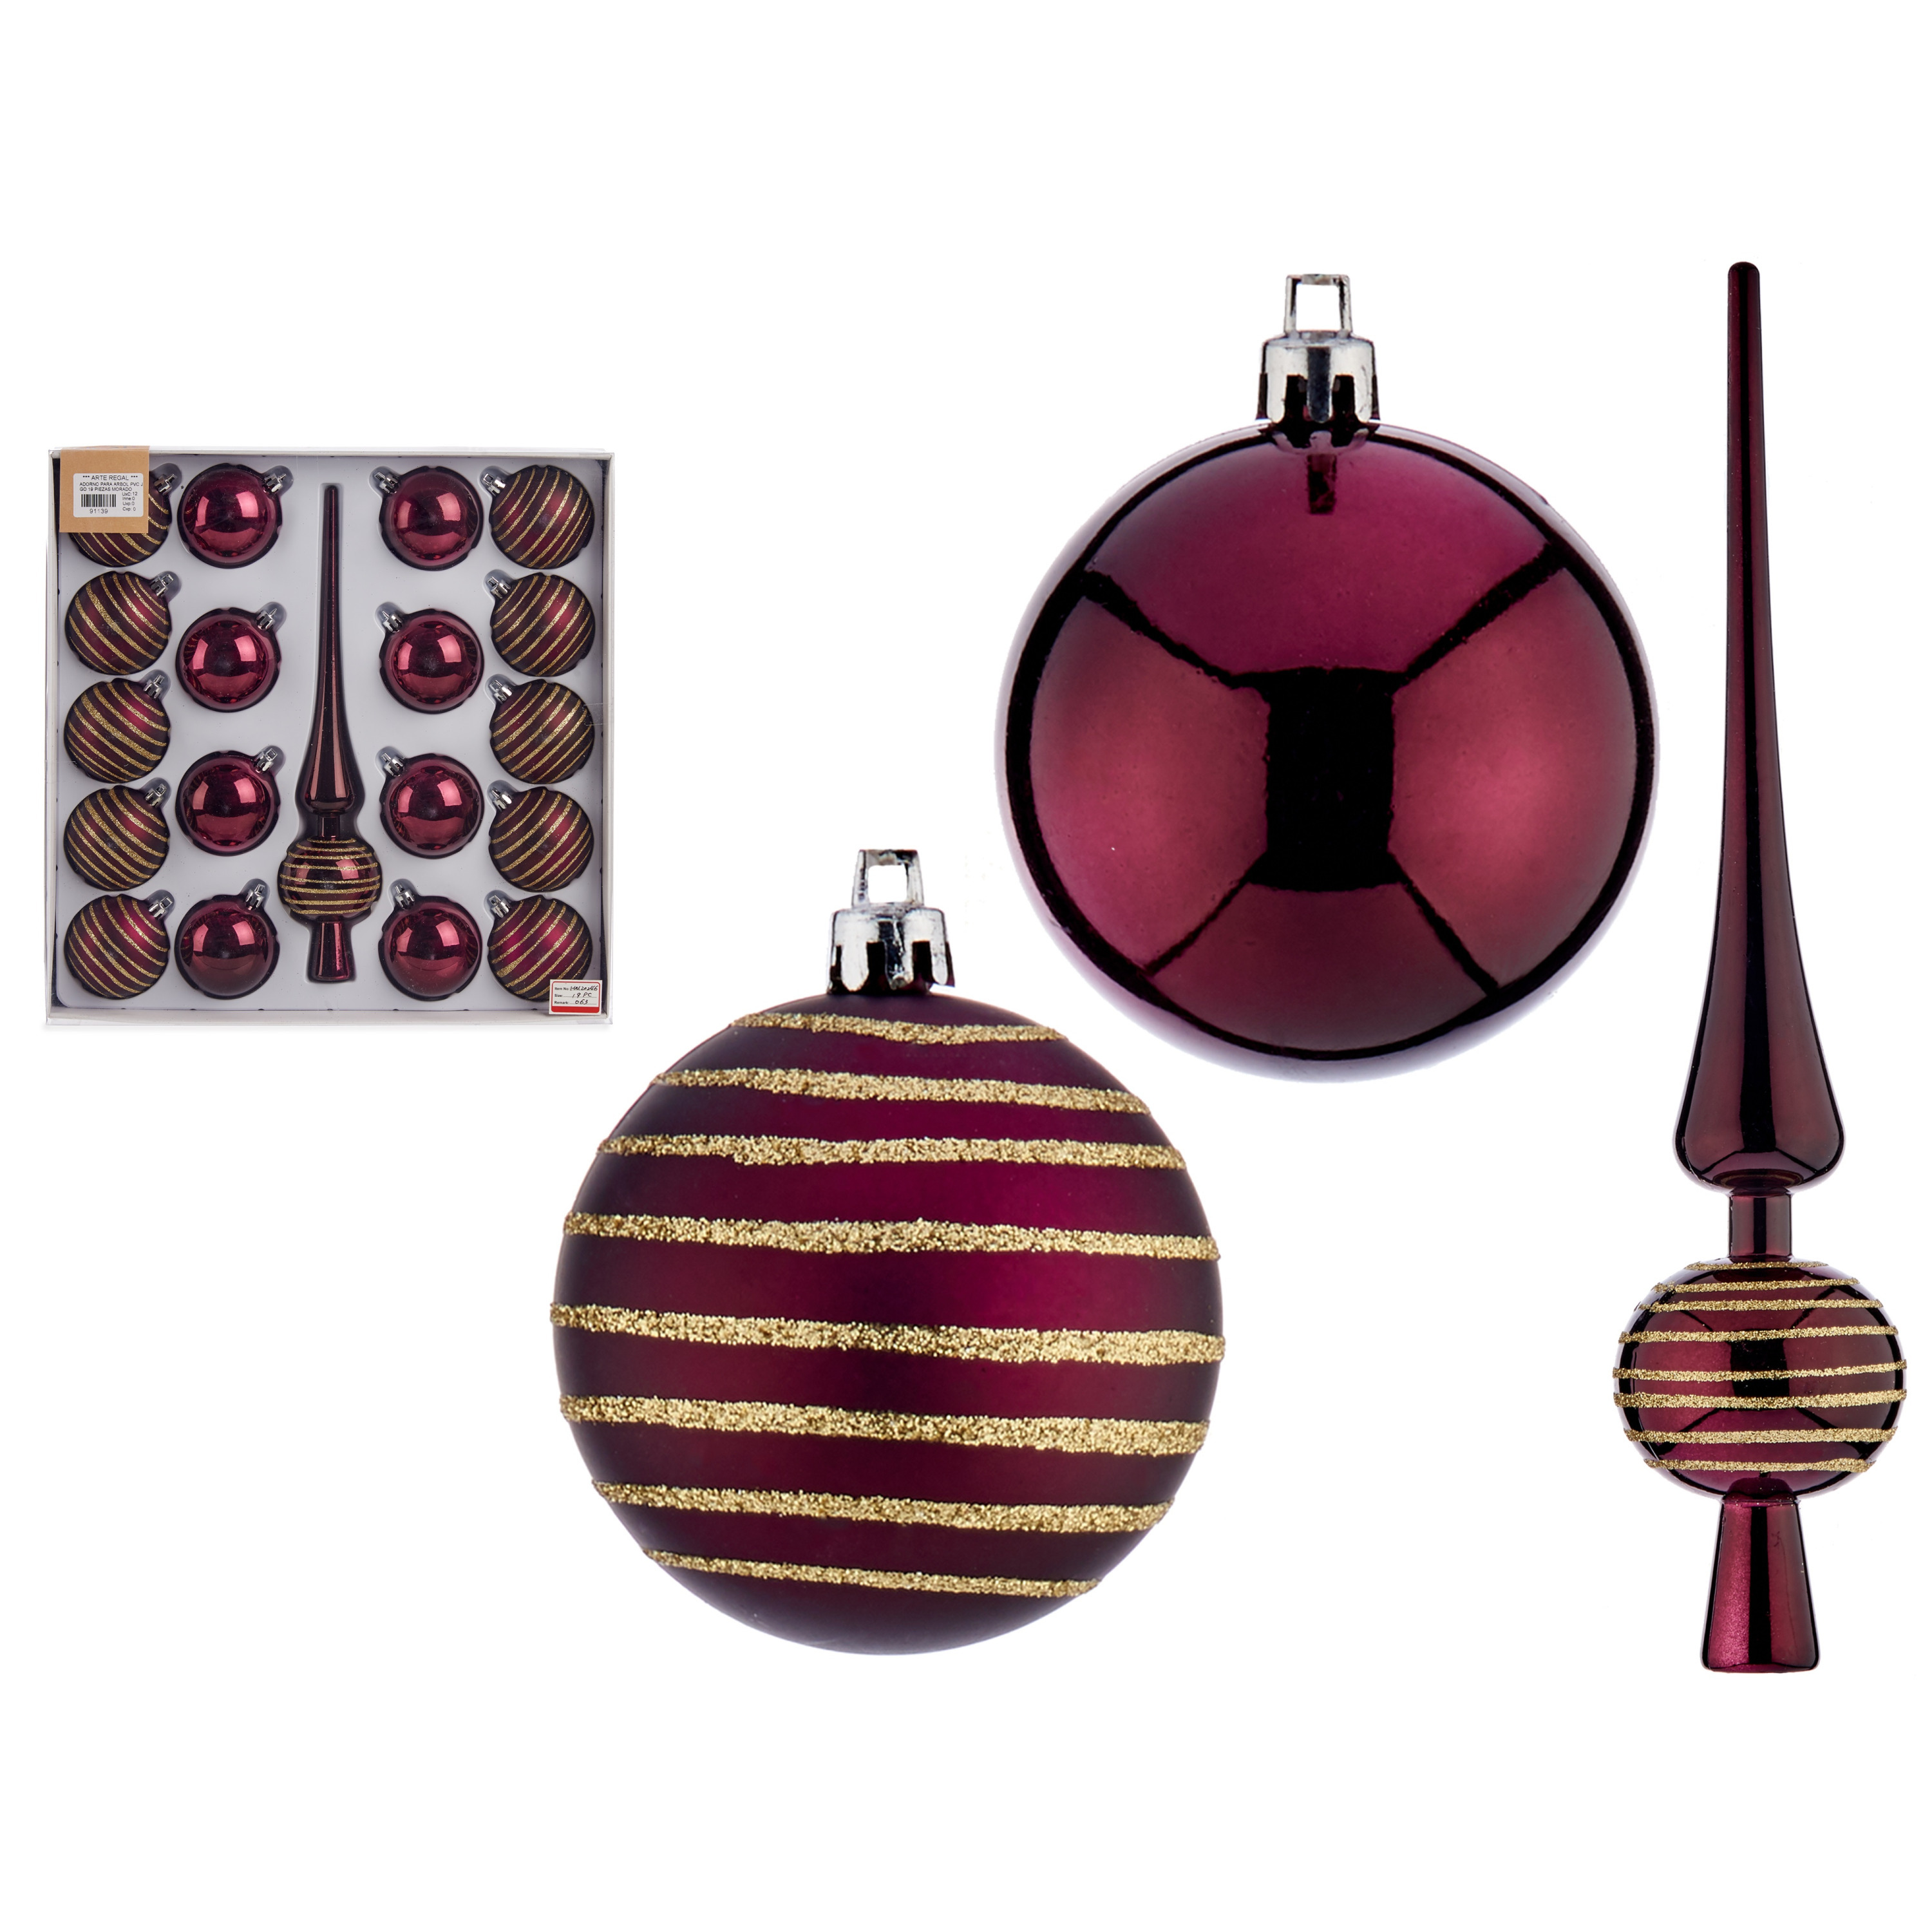 Kerstballen 6 cm met piek 19-delig wijn rood-bordeaux kunststof